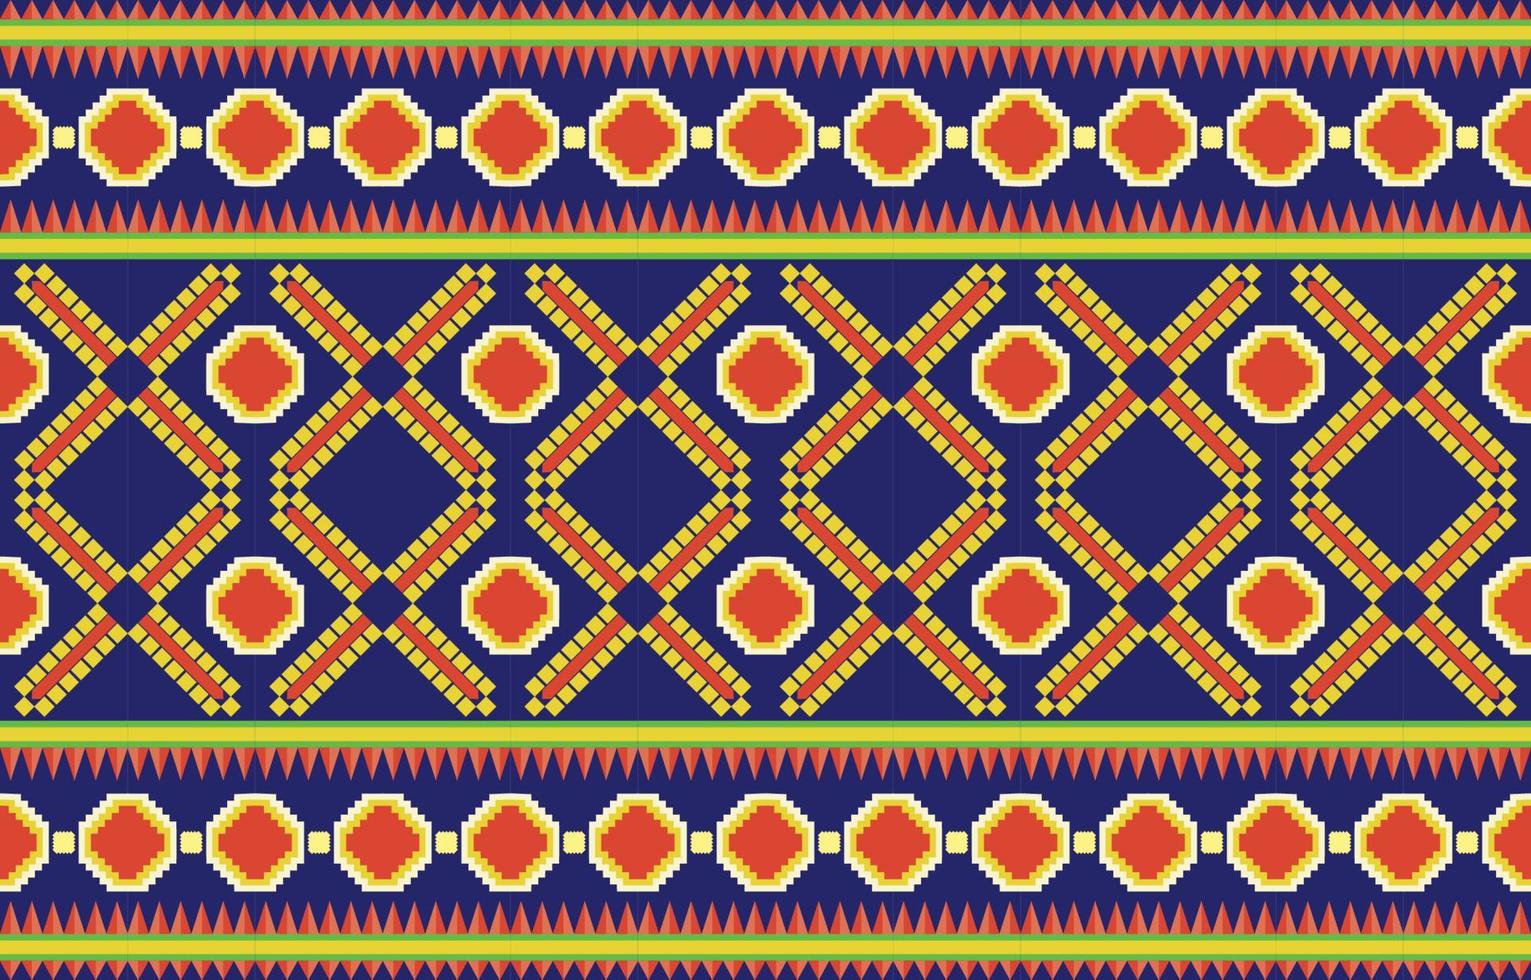 geometrische Oosterse tribal etnische patroon traditionele achtergrondontwerp voor tapijt, behang, kleding, verpakking, batik, stof, vector illustratie borduurstijl.